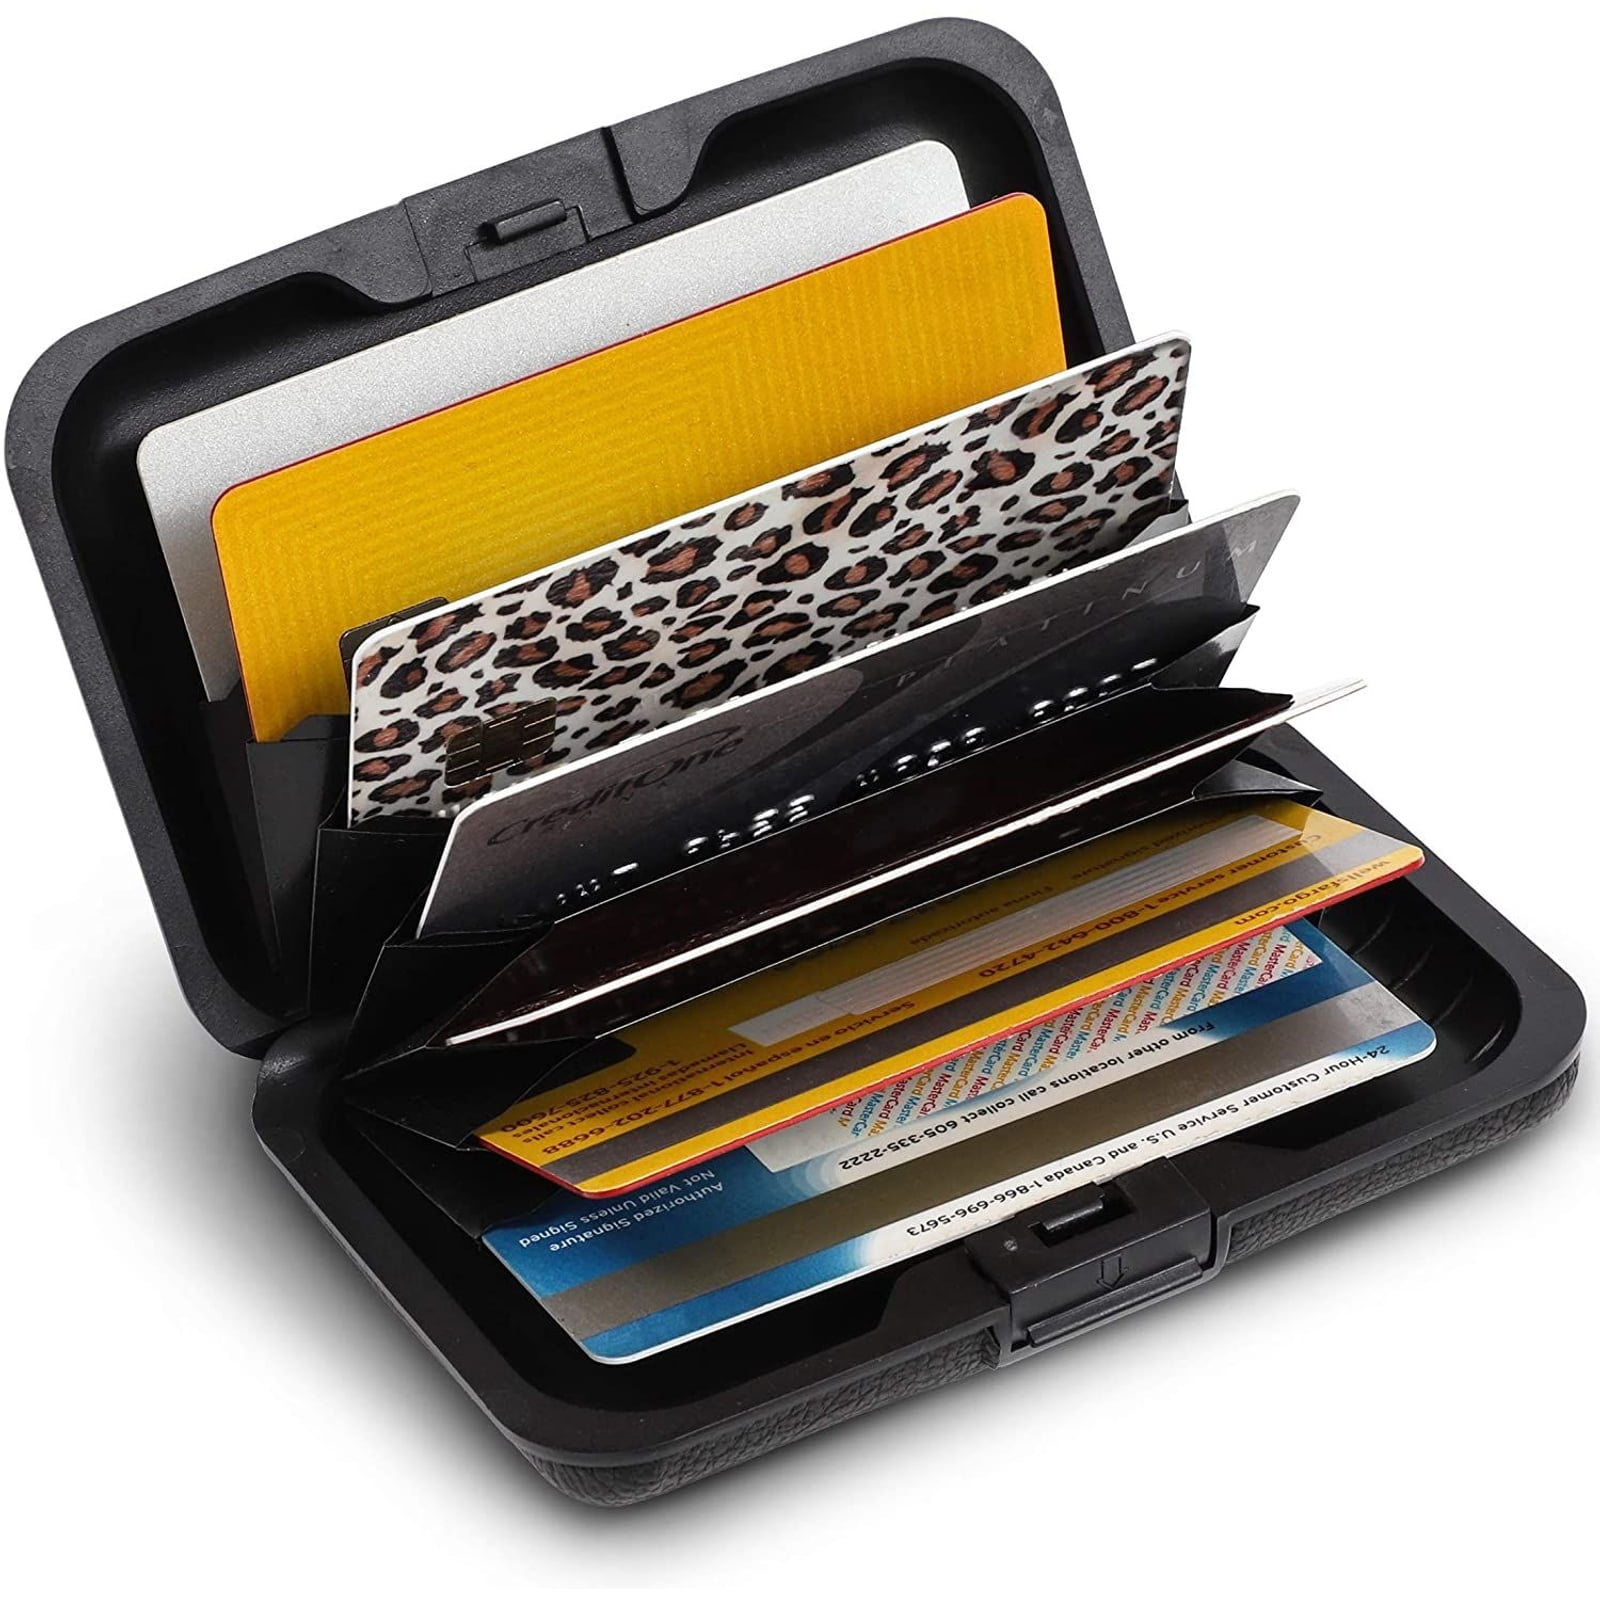 pocket card holder plastic cards pocket card case holder card holder 2021 pocket wallet card pocket case for credit cards Card case